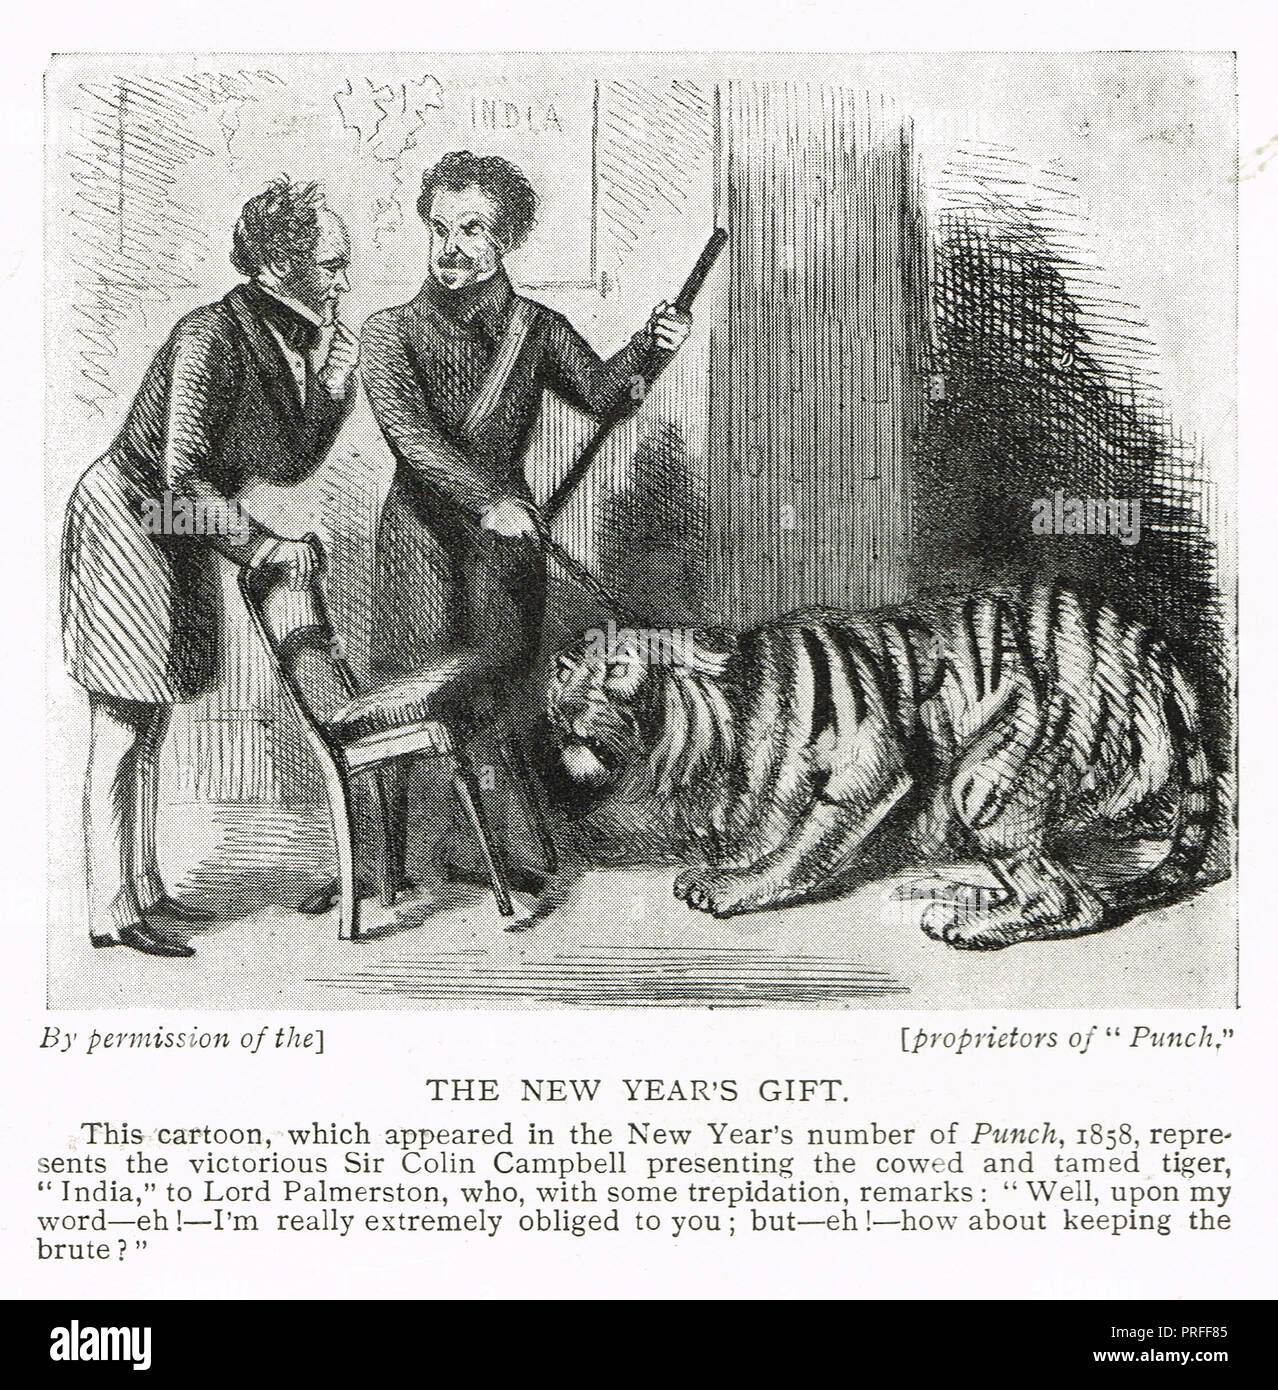 Punch cartoon mit, mit Lord Palmerston, Sir Colin Campbell, Referenzieren der Sepoy Meuterei von 1857, das Geschenk des neuen Jahres berechtigt, Indien wird von einem eingeschüchtert Tiger vertreten Stockfoto